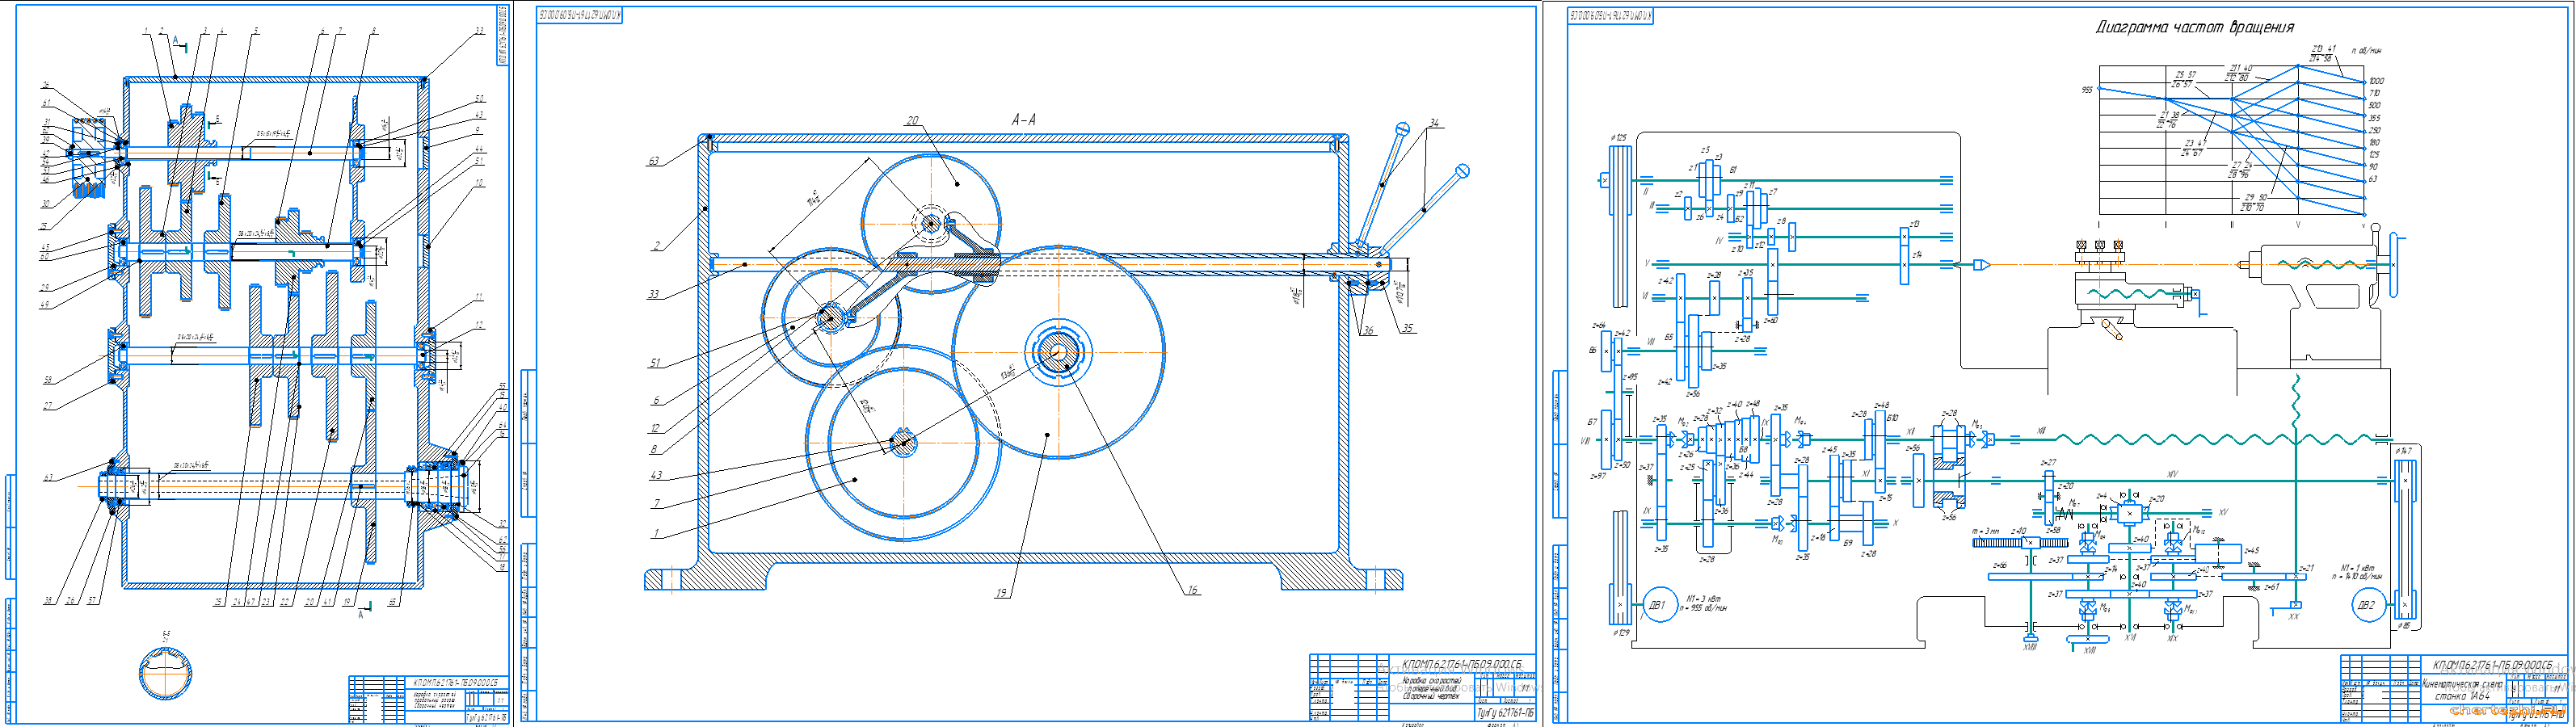 Курсовой проект - Разработка привода главного движения токарно-винторезного станка 1А64